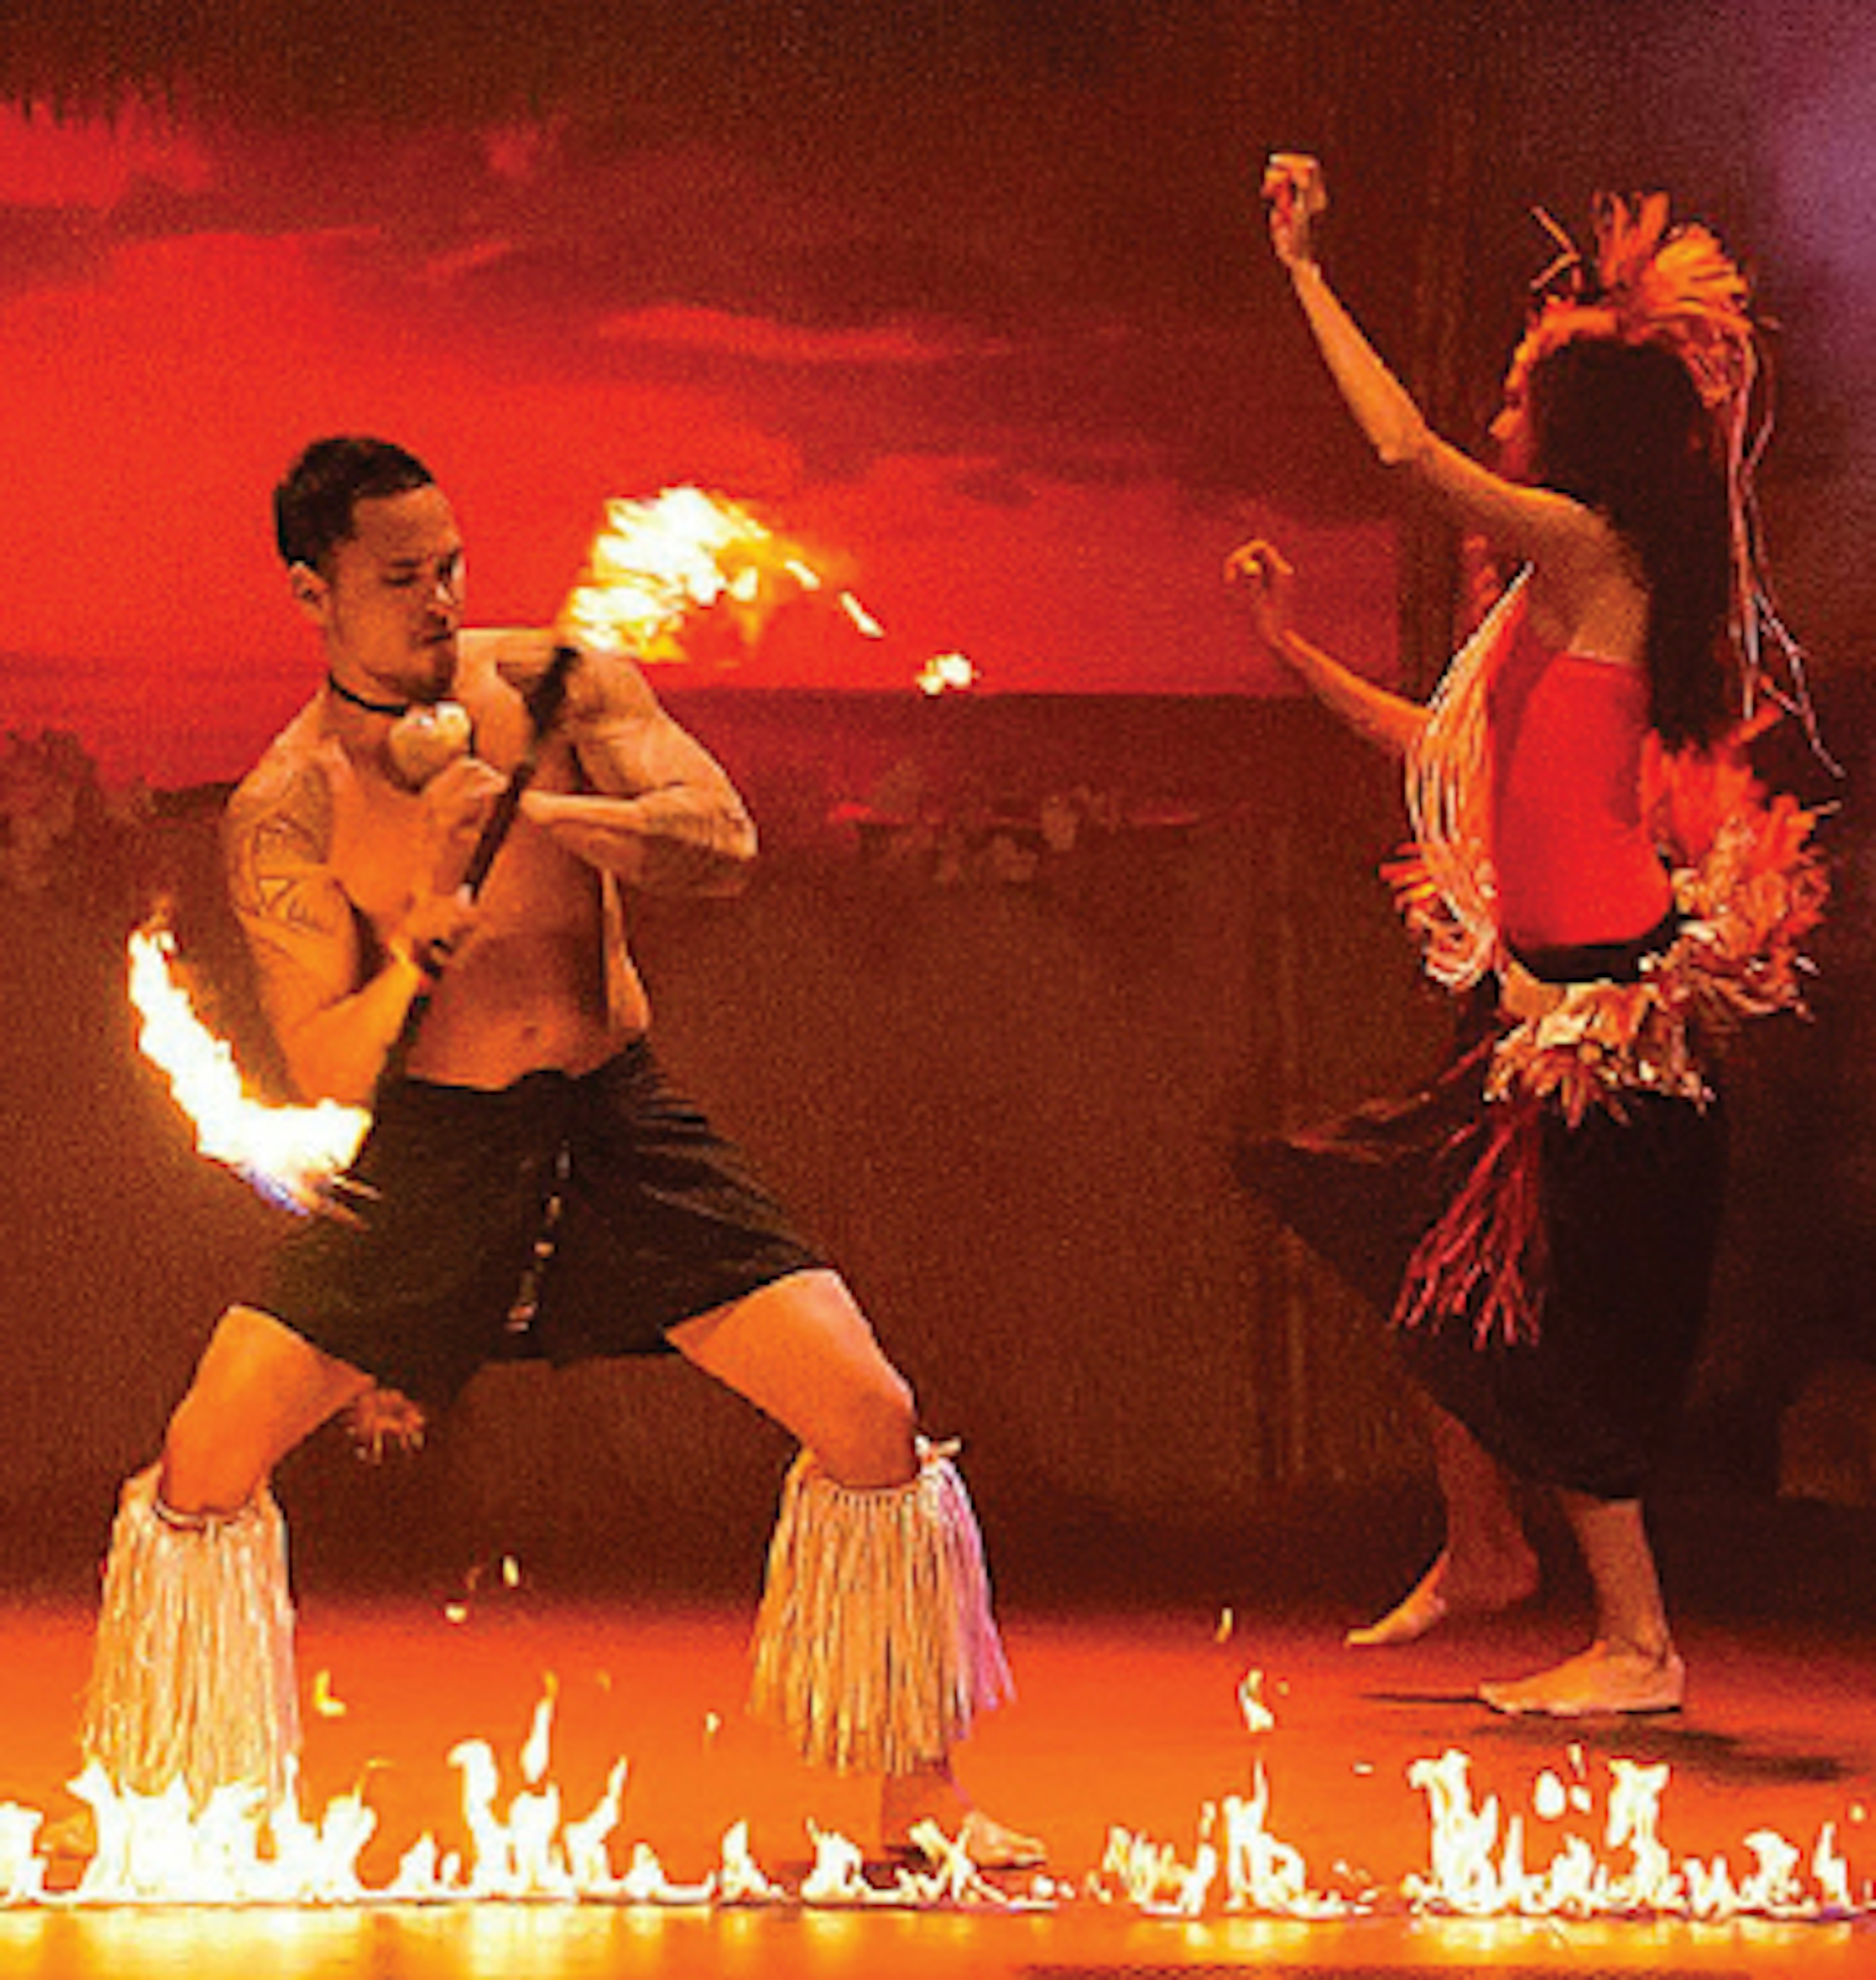 Polynesian Fire